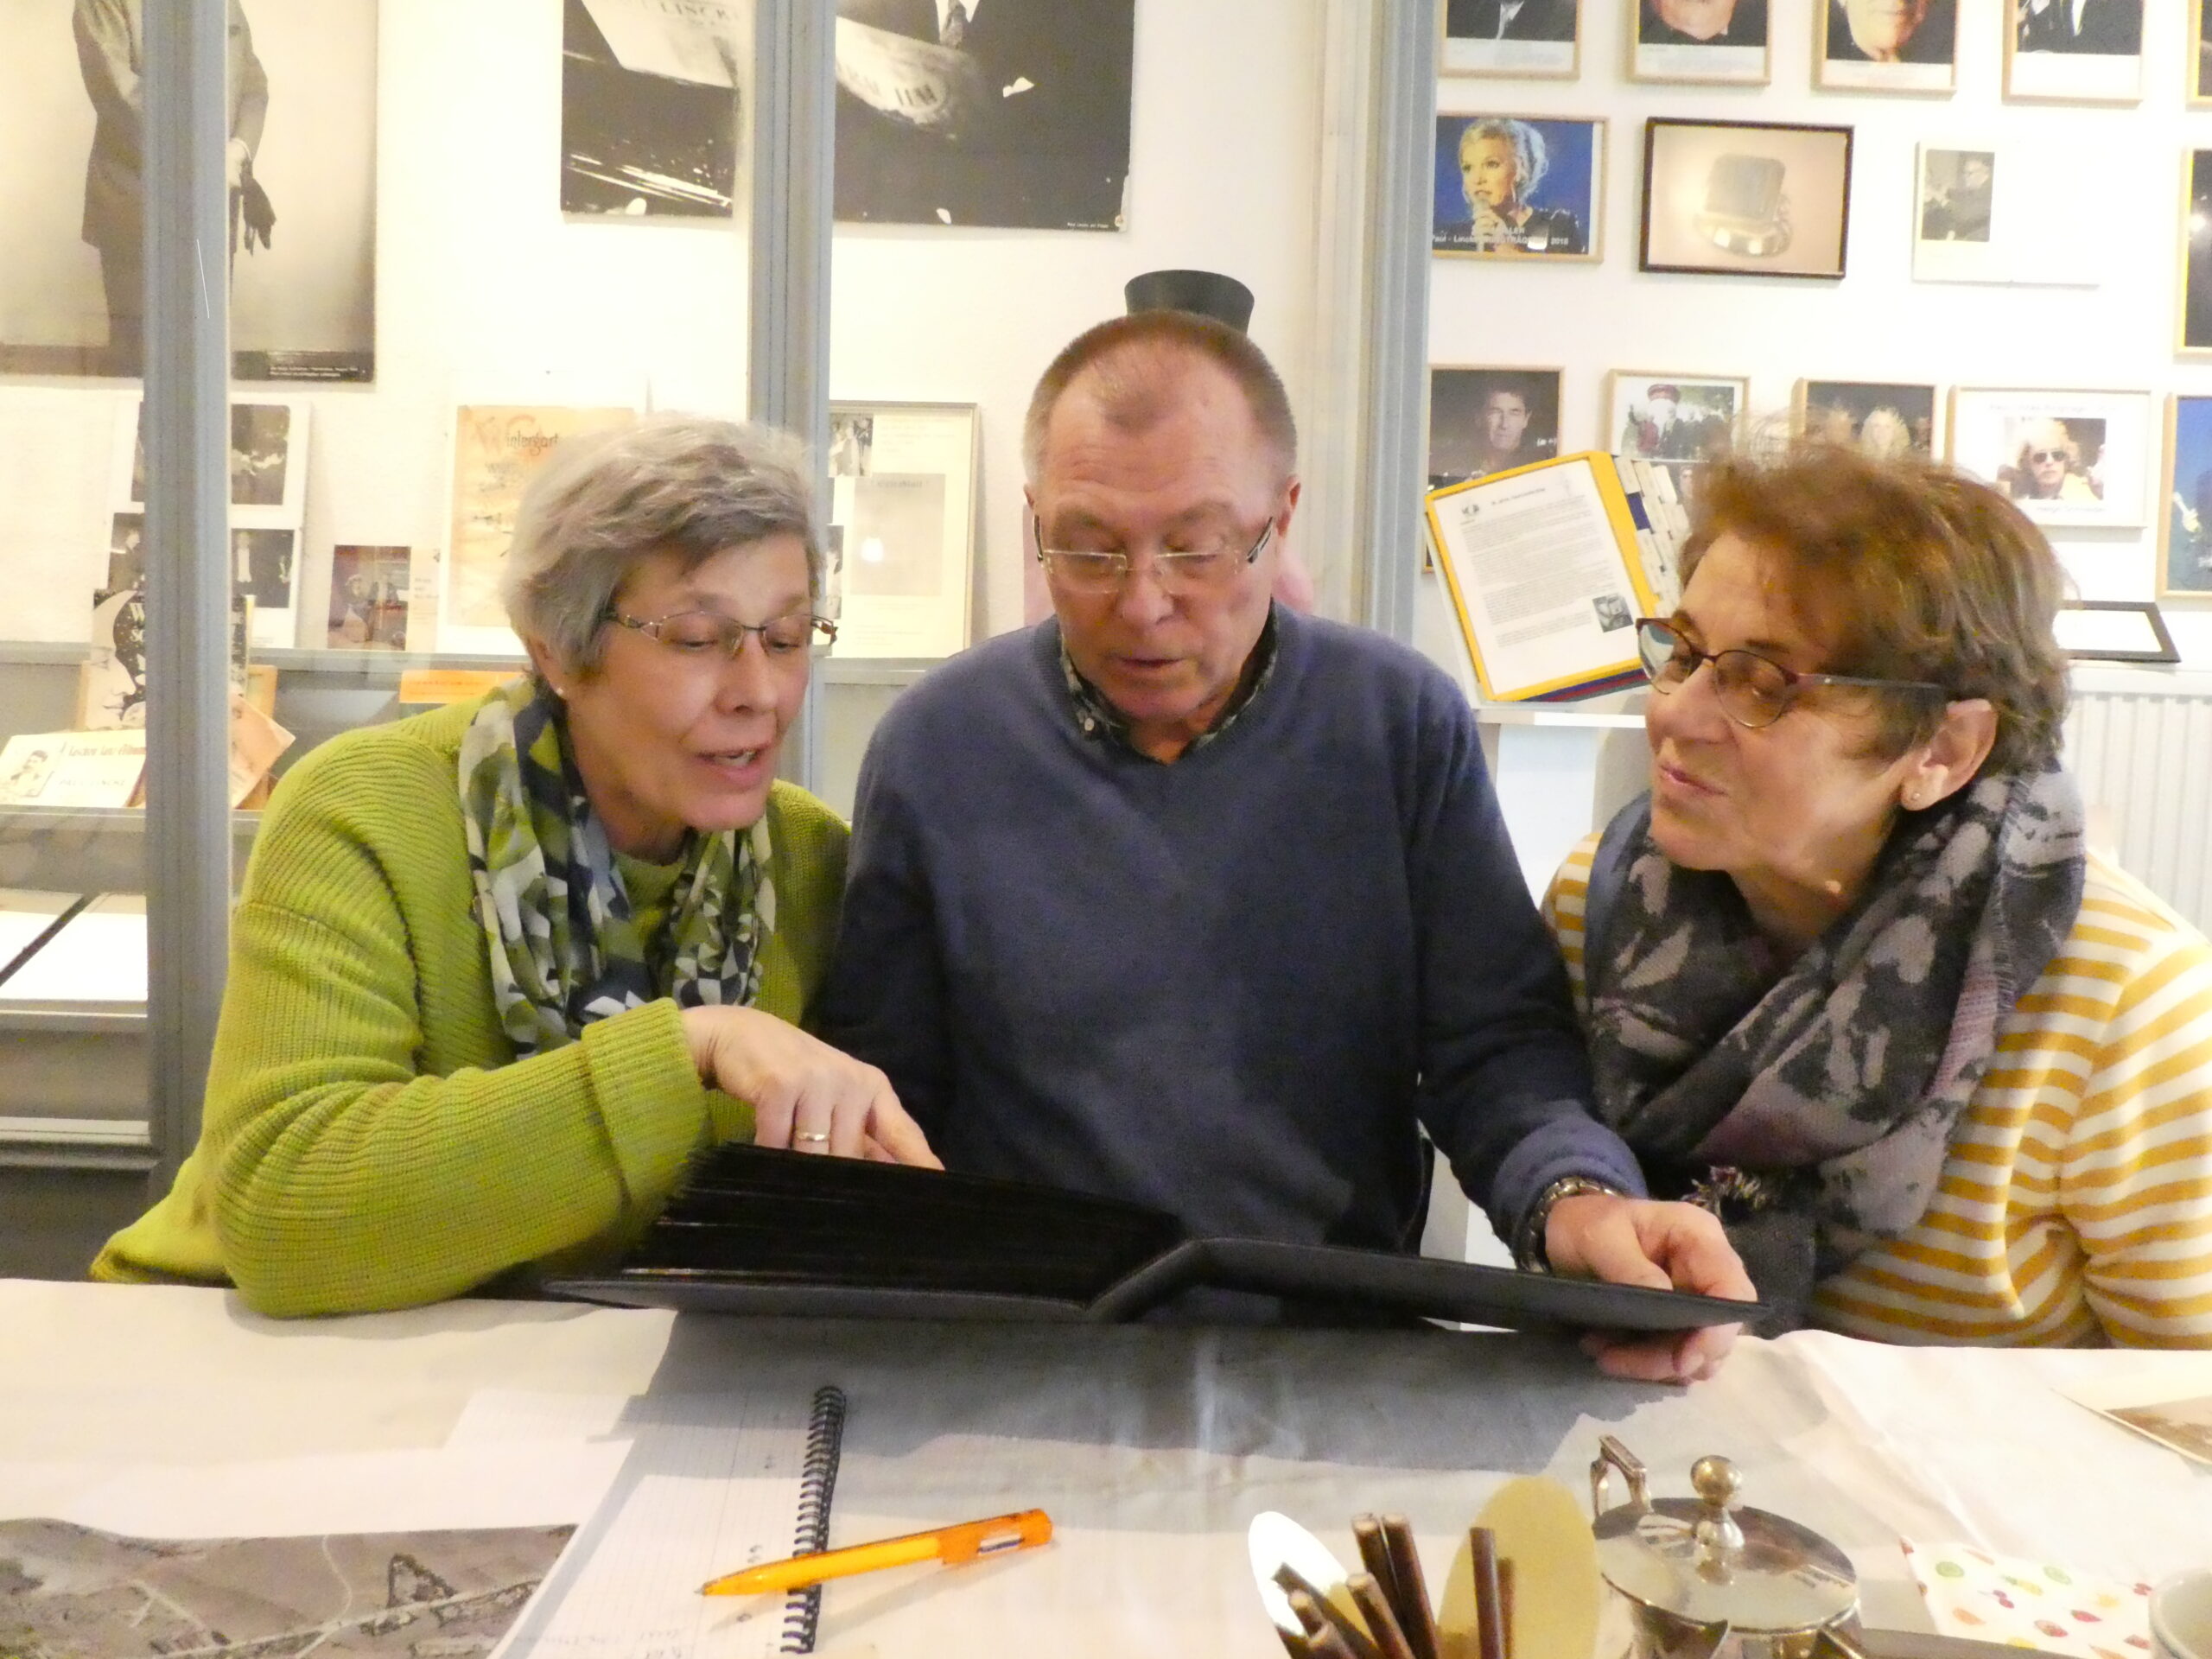 3 Besucher stöbern in einem Fotoalbum. eine Frau (links im Bild) zeigt auf ein Foto. eine anderen Frau (rechts) schaut interessiert auf das Detail.In der Mitte sitzt ein Mann, der das Fotoalbum aufgekklappt hält.